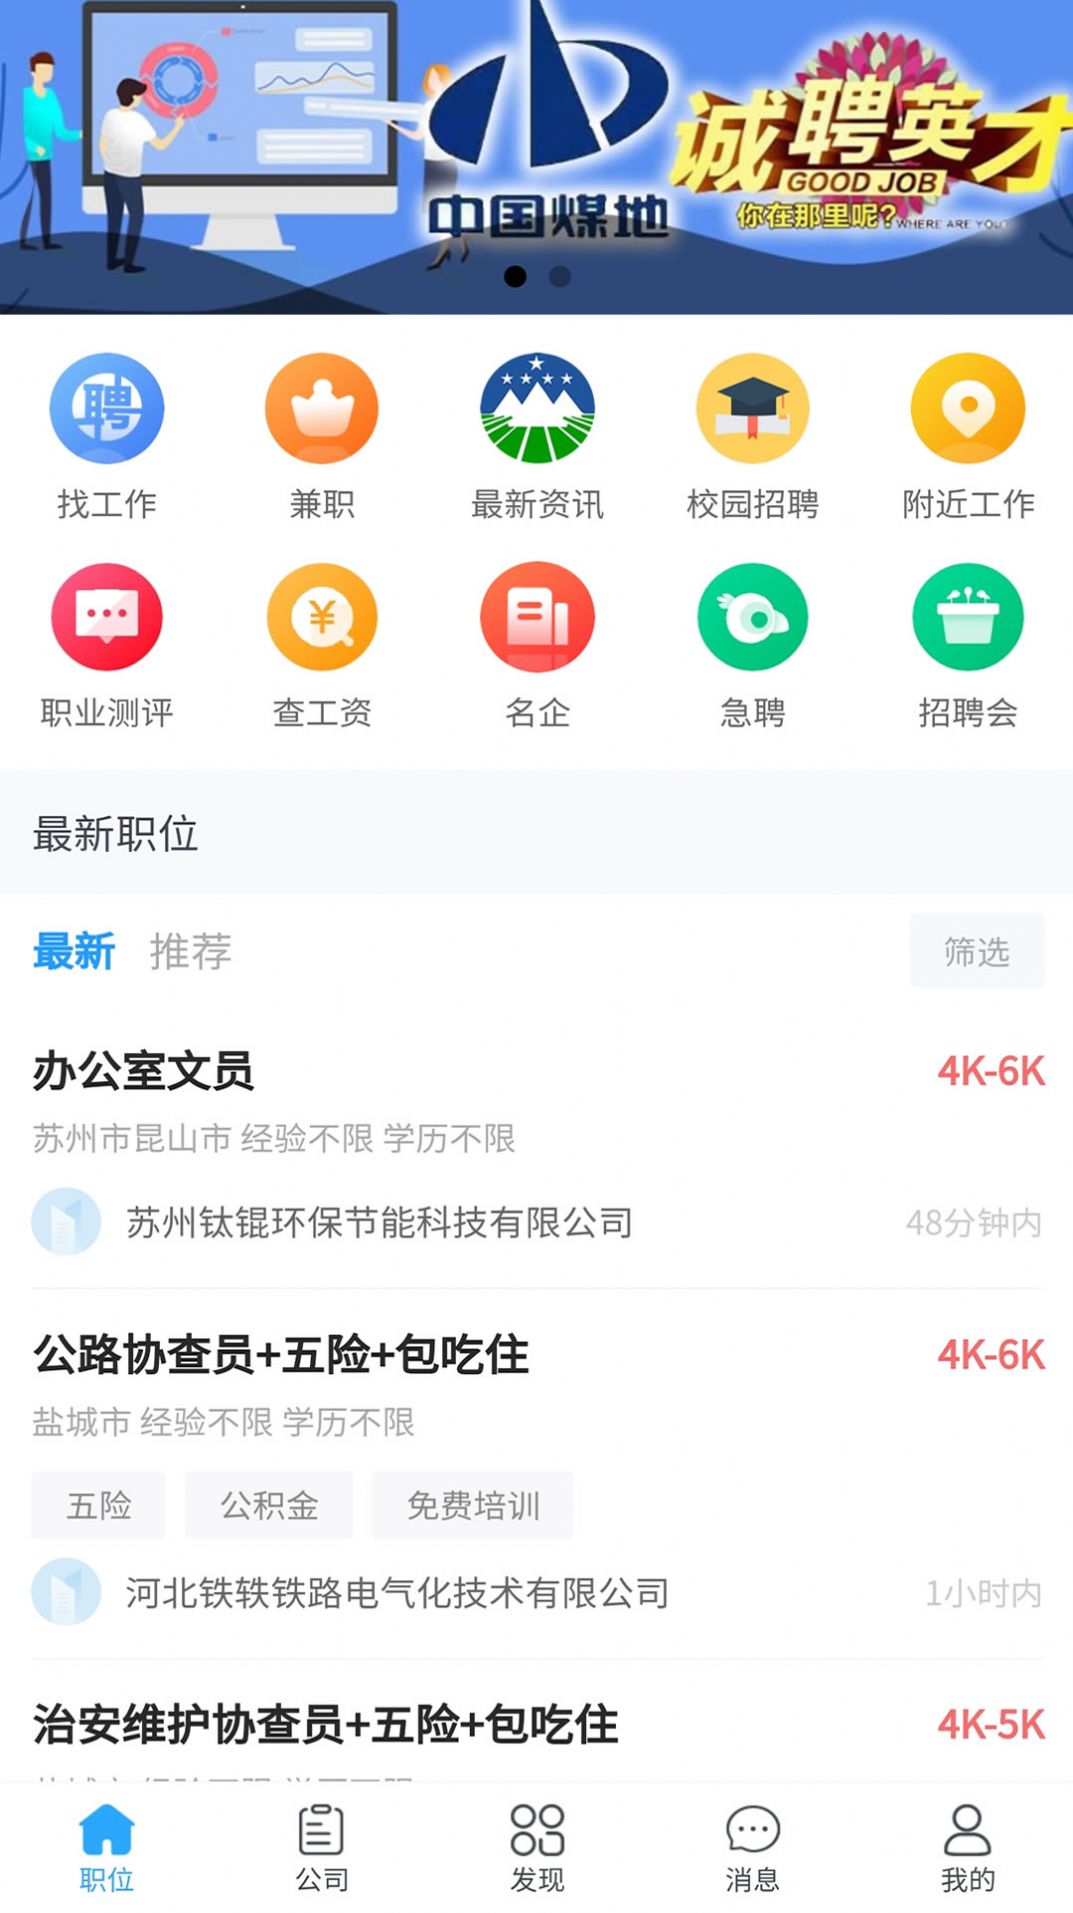 江苏人才网招聘信息网app最新版下载图片1